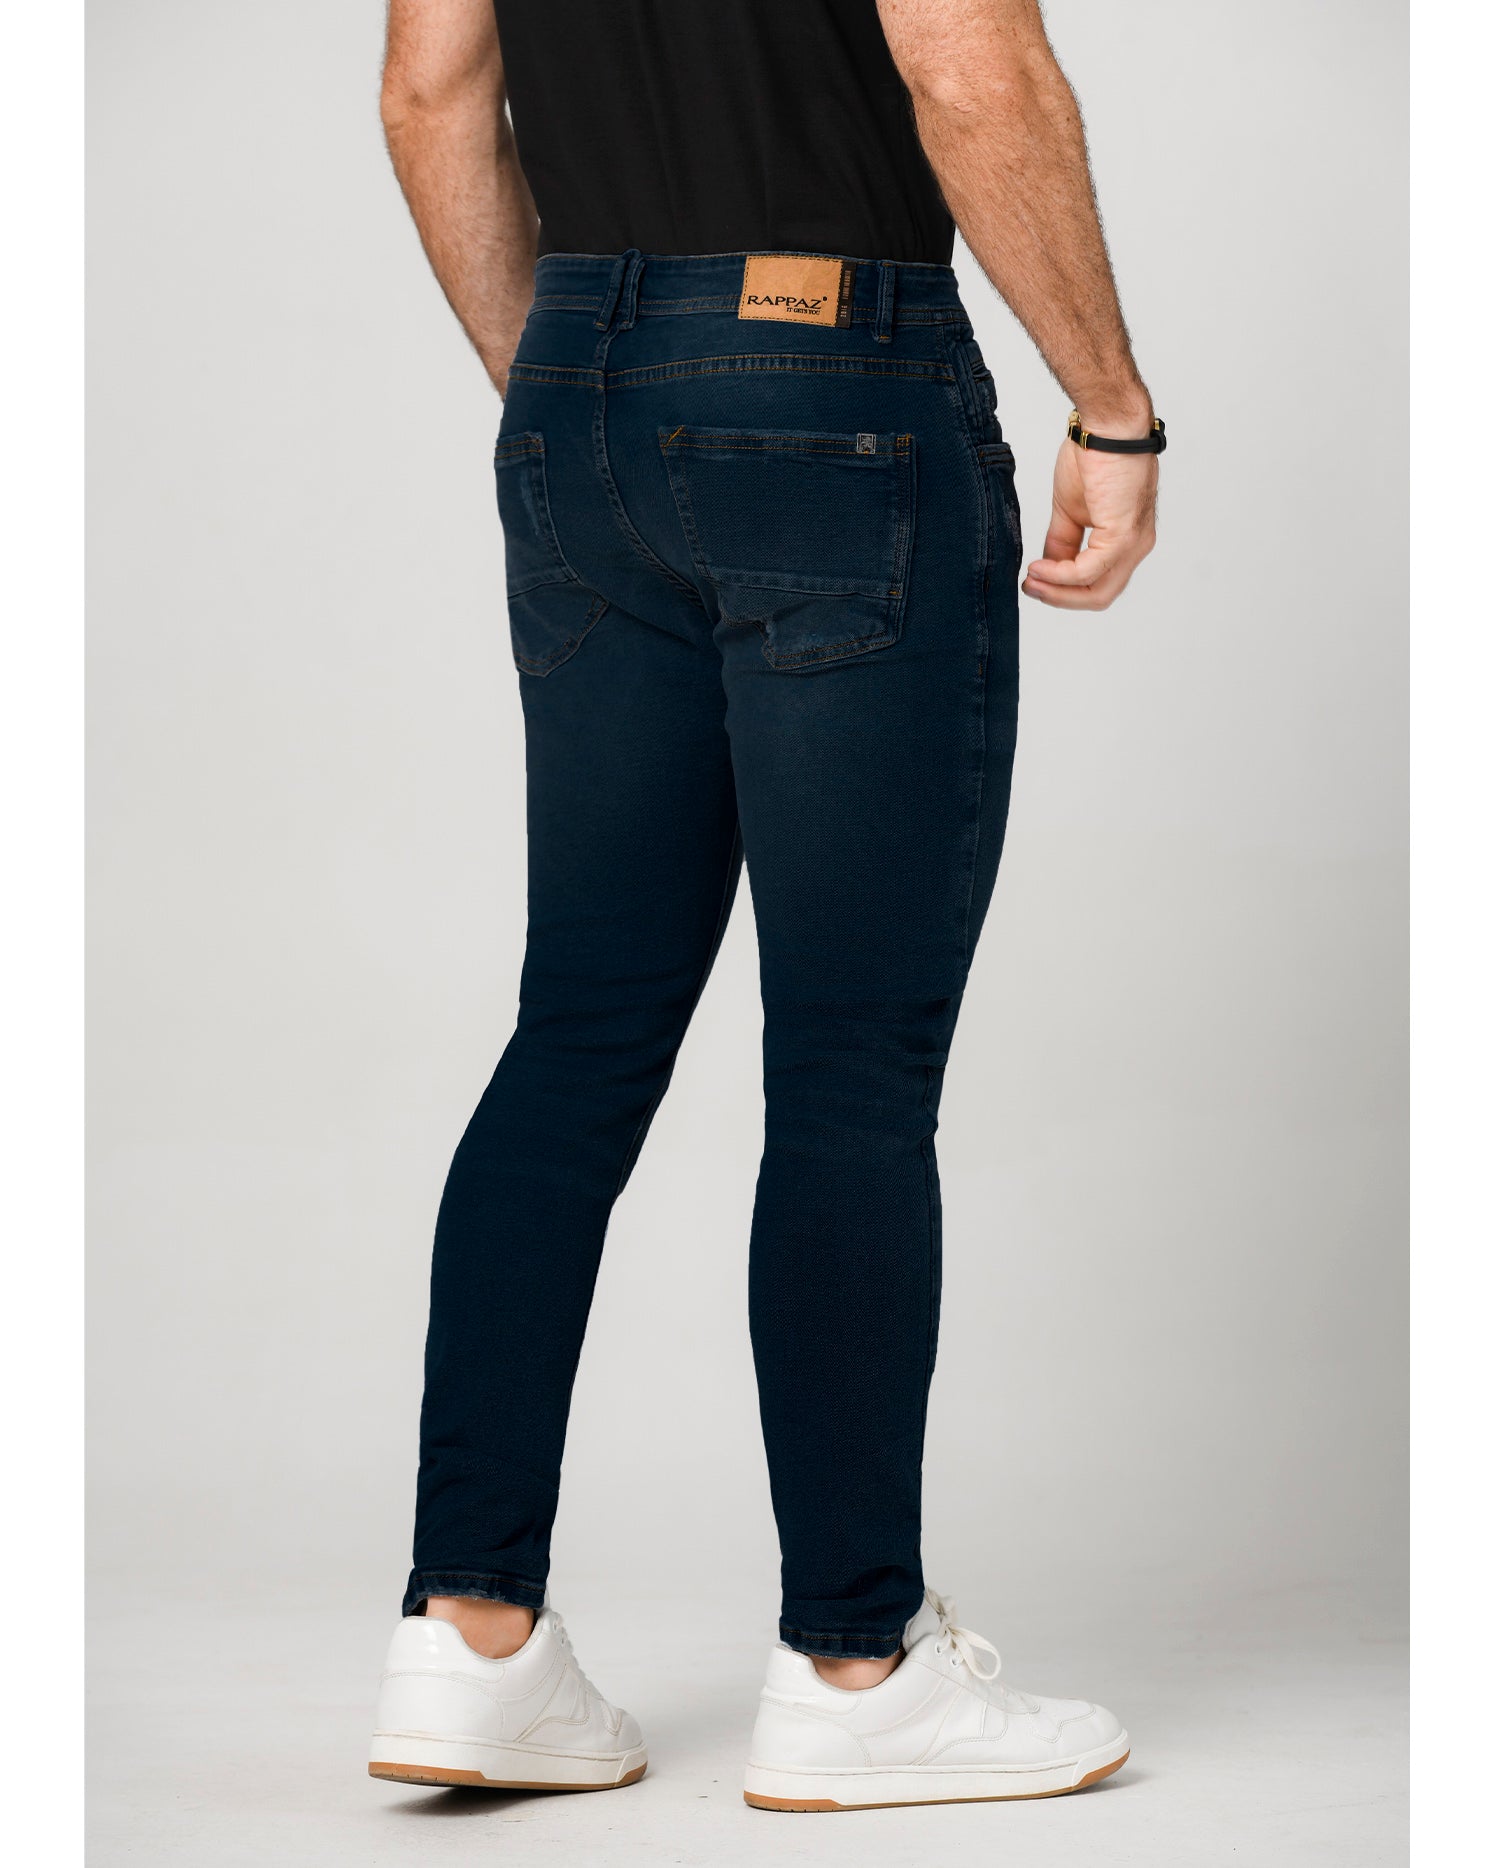 Jean skinny azul oscuro. Confeccionado en Algodón y Elastano, bolsillos laterales y posteriores funcionales. jean clásico.